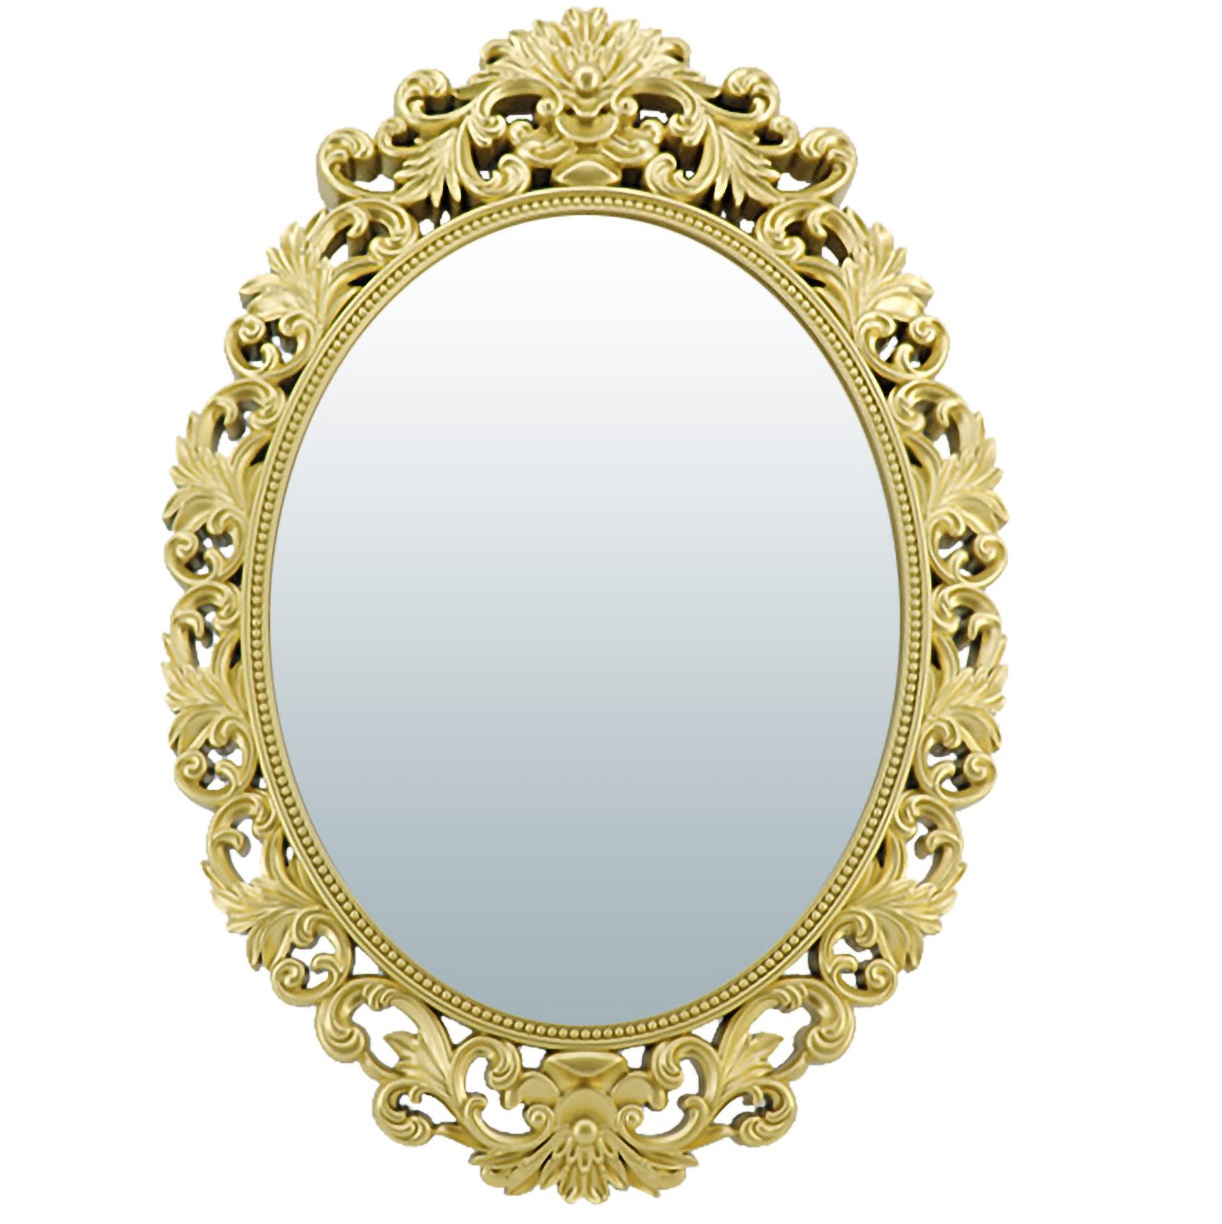 Зеркало версаль. QWERTY зеркало декоративное "Реймс", золото, 25 см, d зеркала 9 см /24. Зеркало Hoff. Зеркало QWERTY.